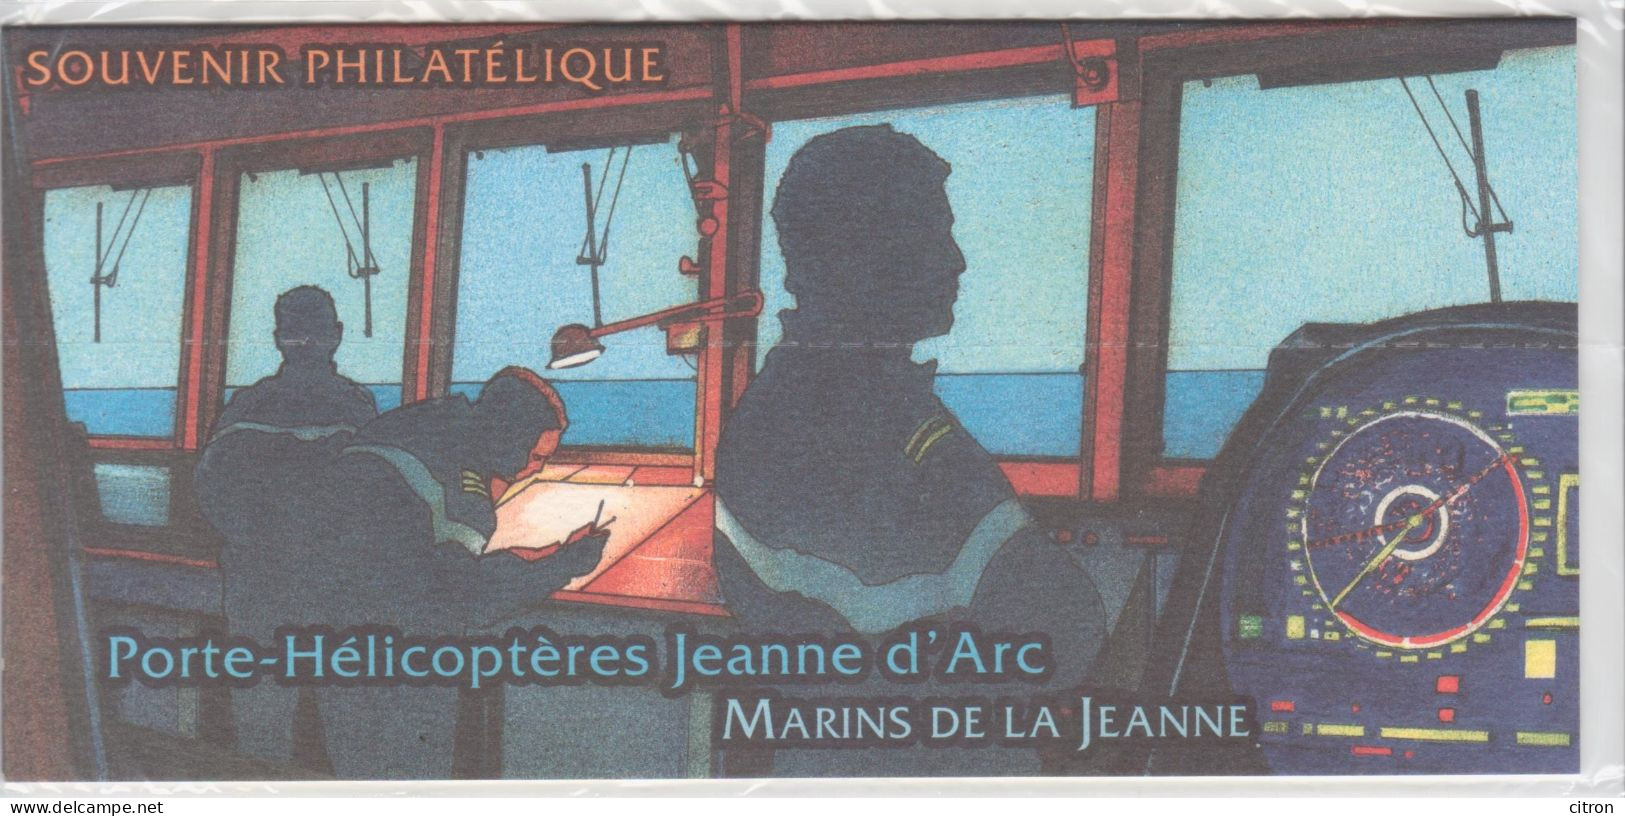 LOT 1616 FRANCE SOUVENIR PHILATELIQUE 2010 PORTE HELICOPTERES JEANNE D'ARC - Bloques Souvenir